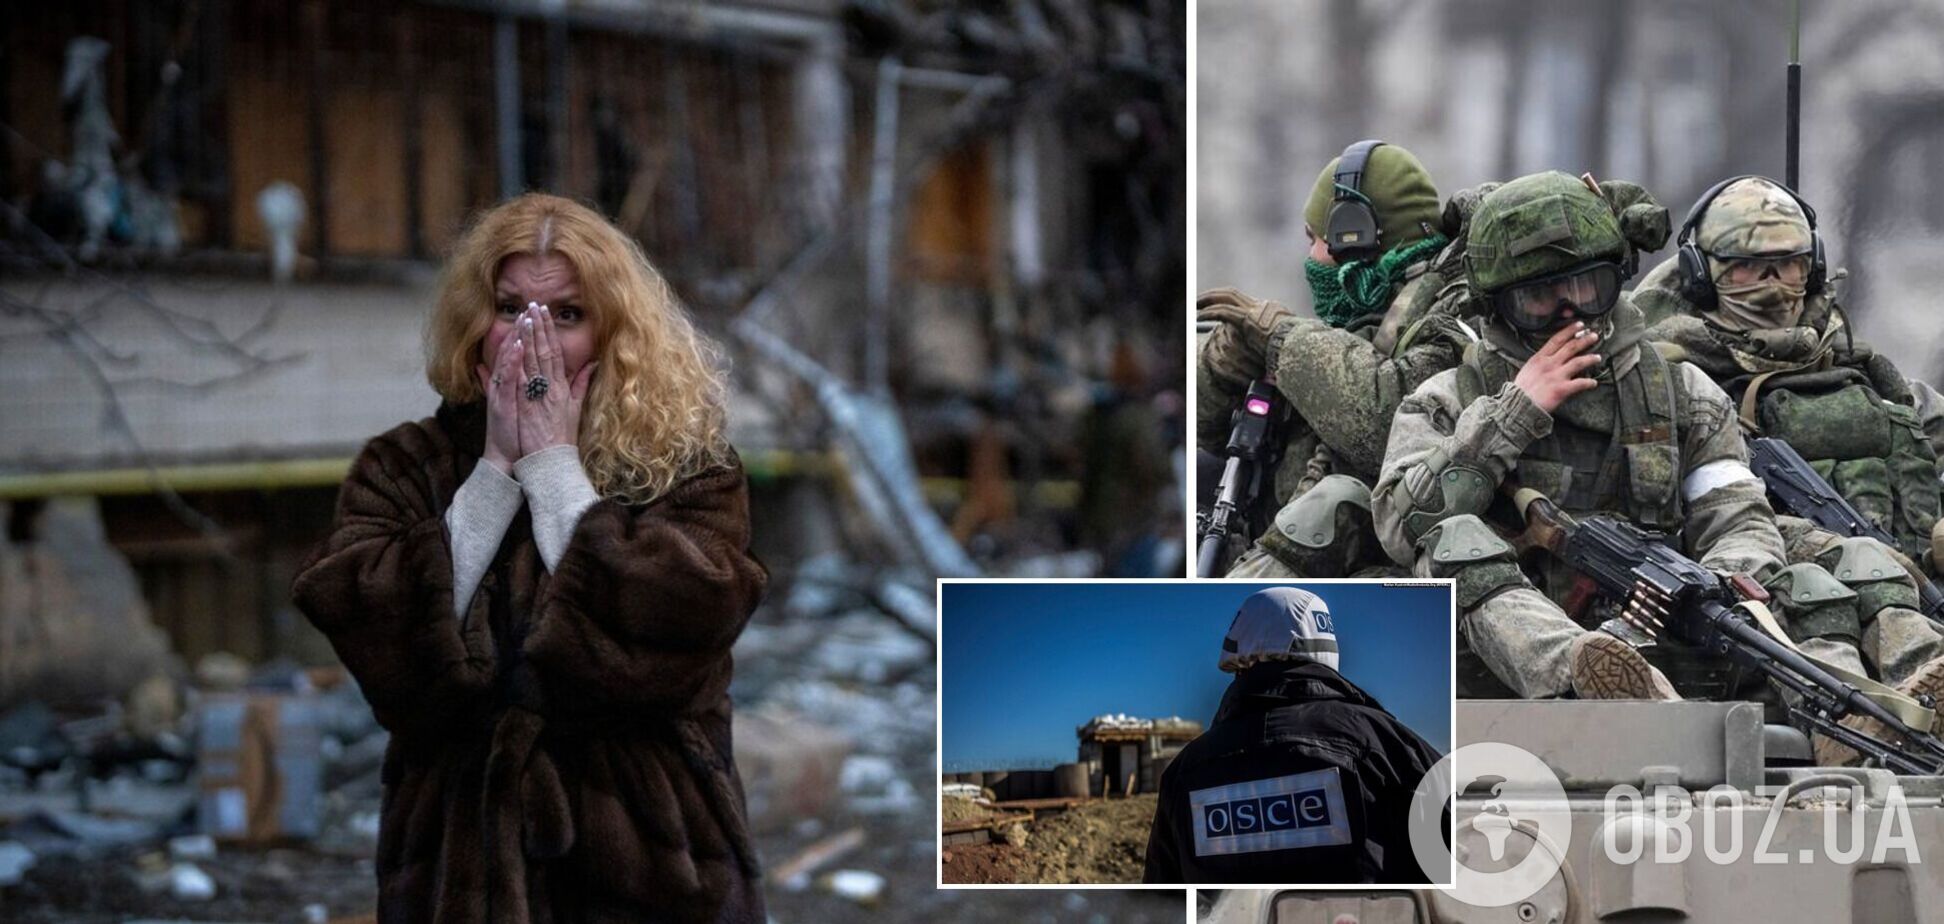 ОБСЄ представила першу доповідь про воєнні злочини РФ в Україні